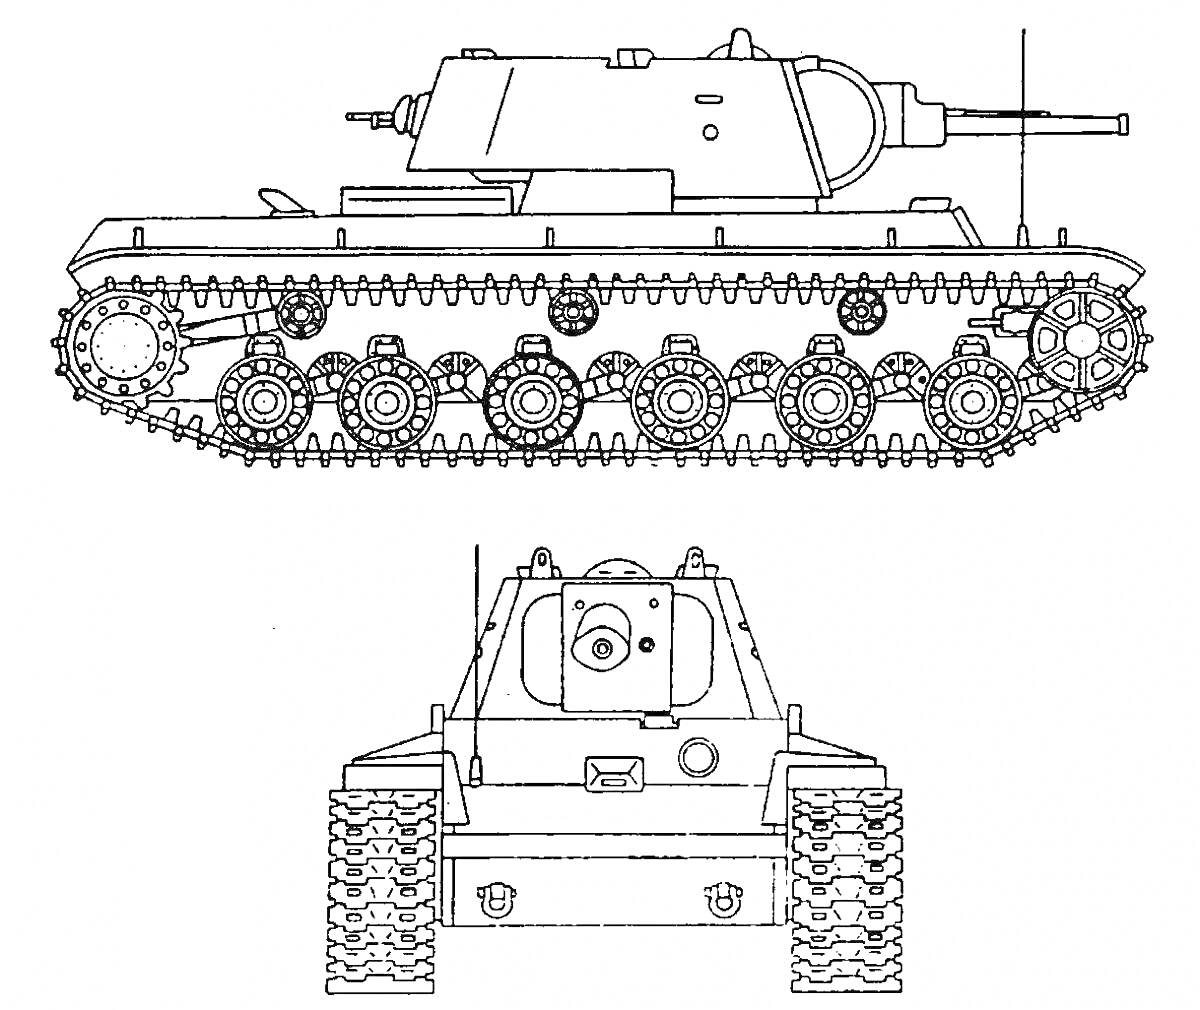 Раскраска Чертеж танка КВ-44 с боковой и передней проекциями, видны гусеницы, элементы подвески, орудие и башня